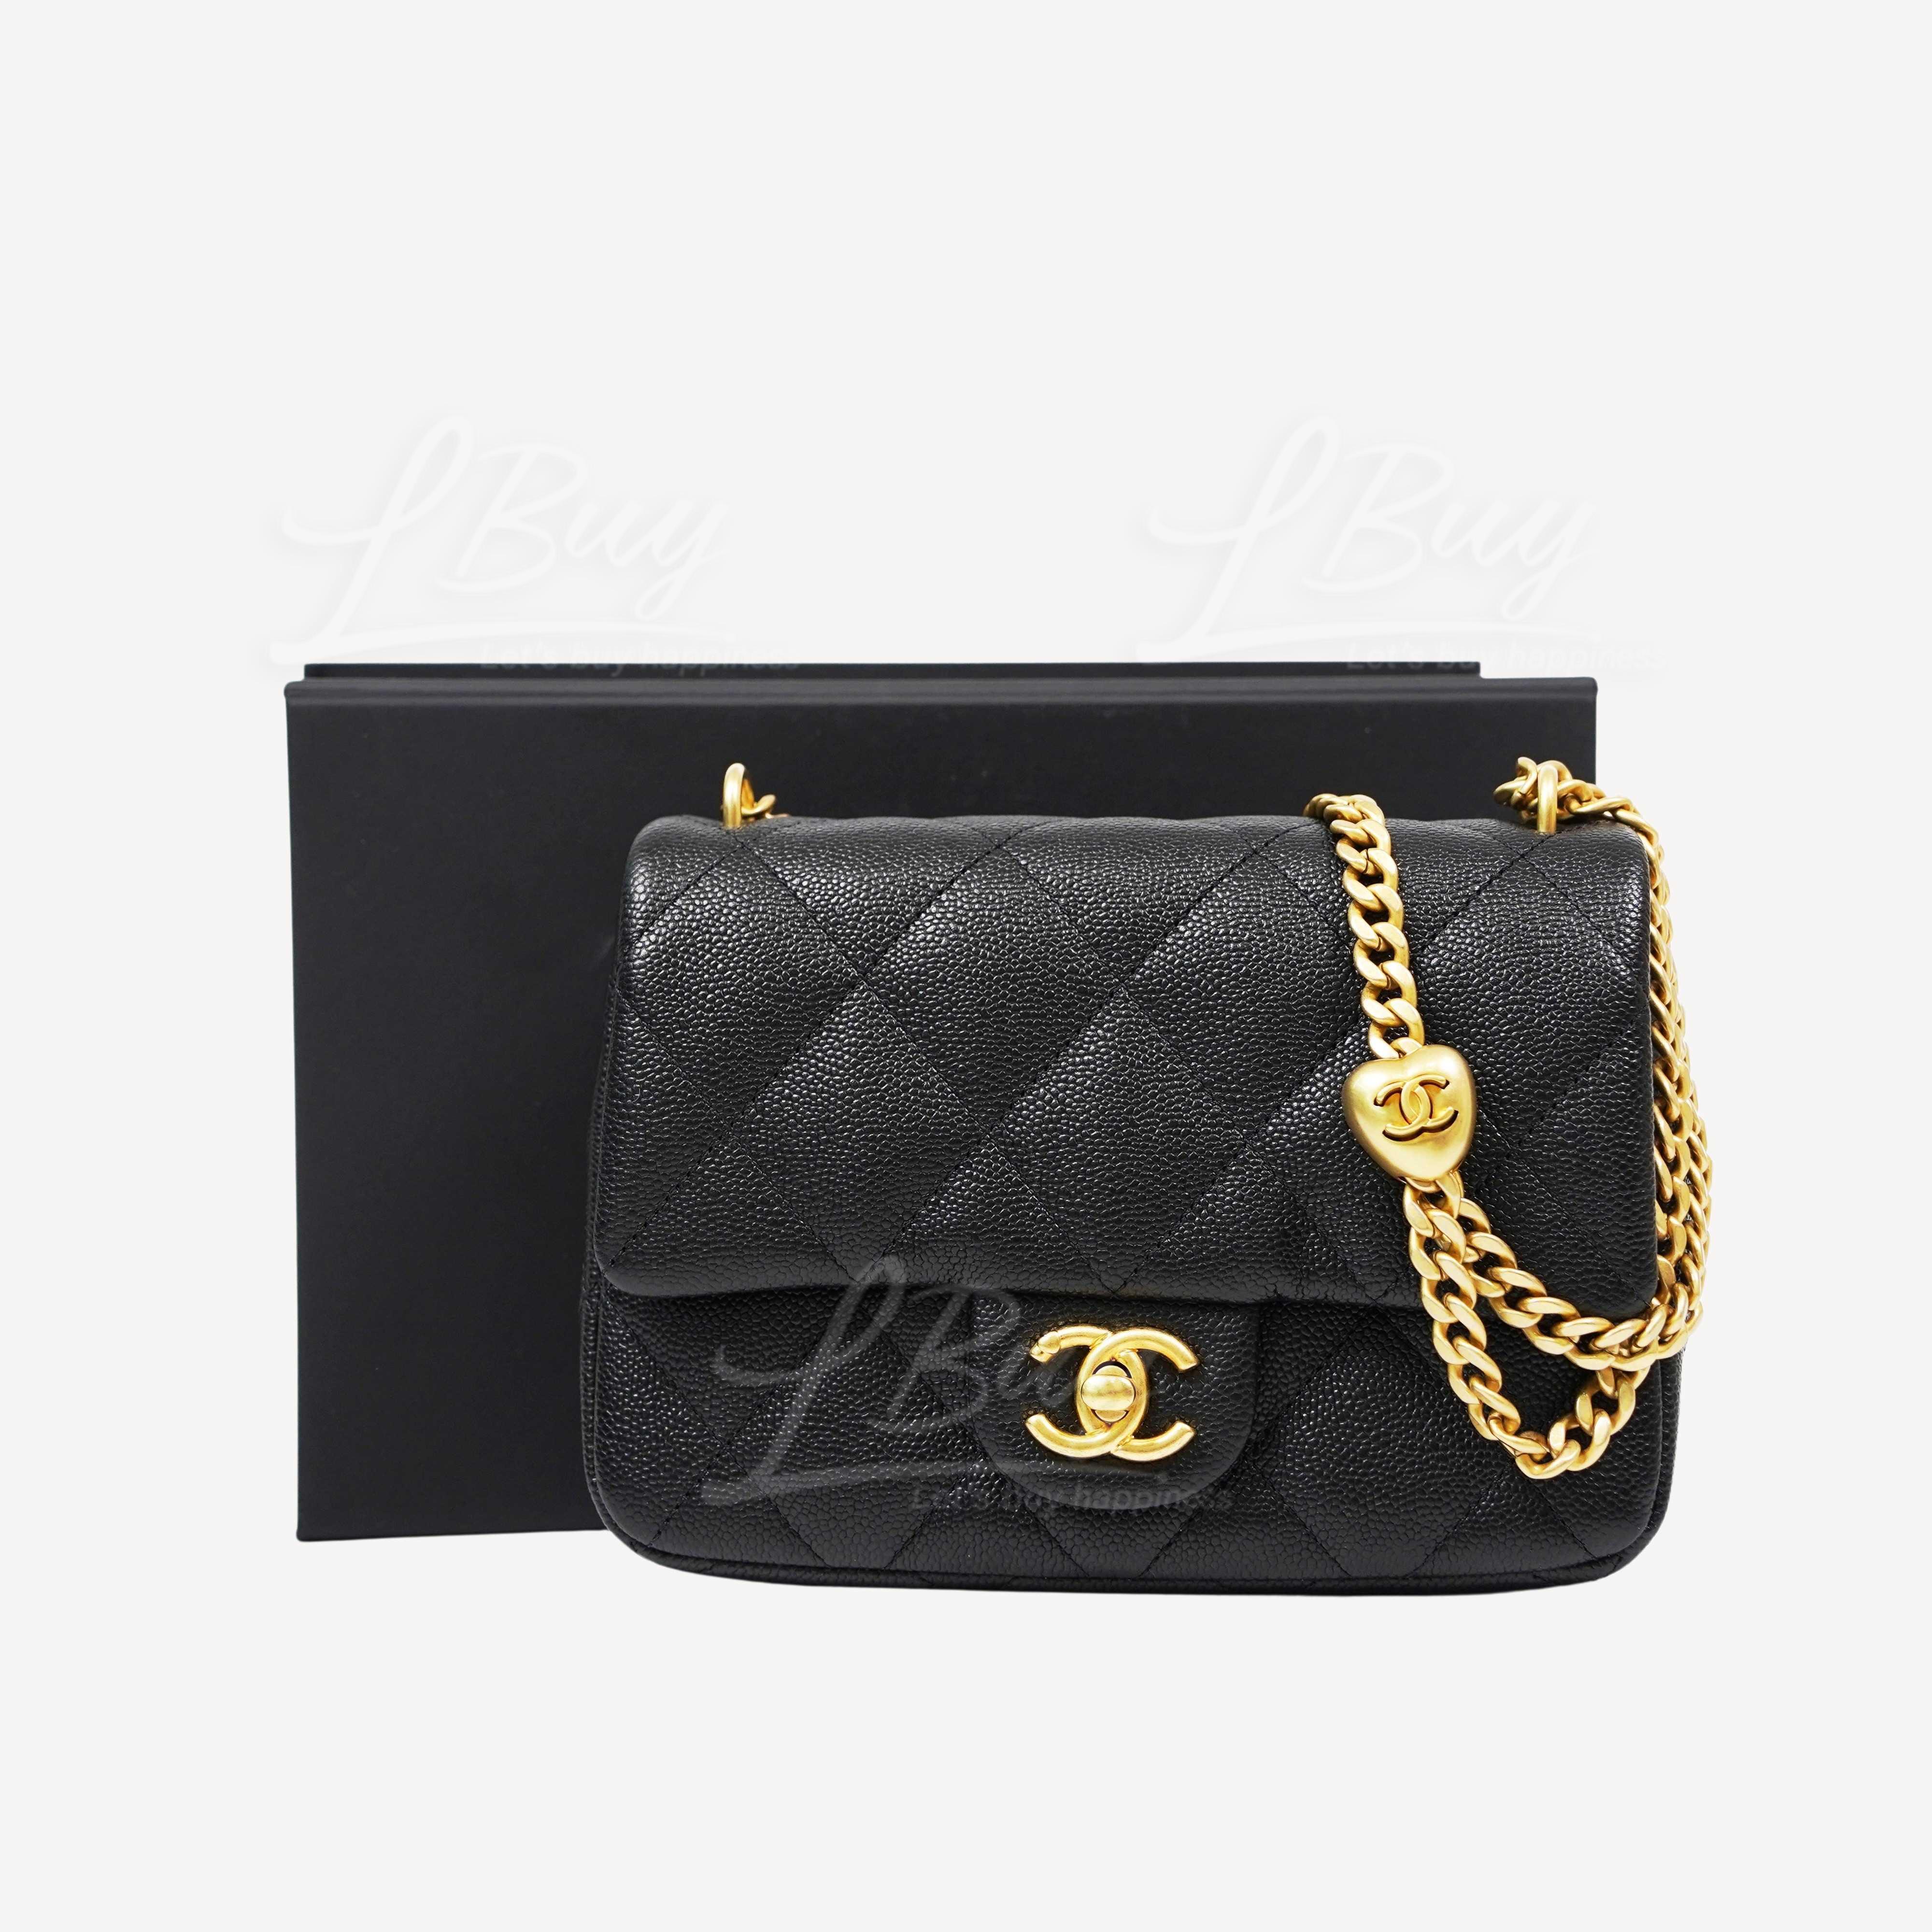 CHANEL-Chanel 心心調節扣鏈帶CC Logo 20cm黑色垂蓋手袋AS3829